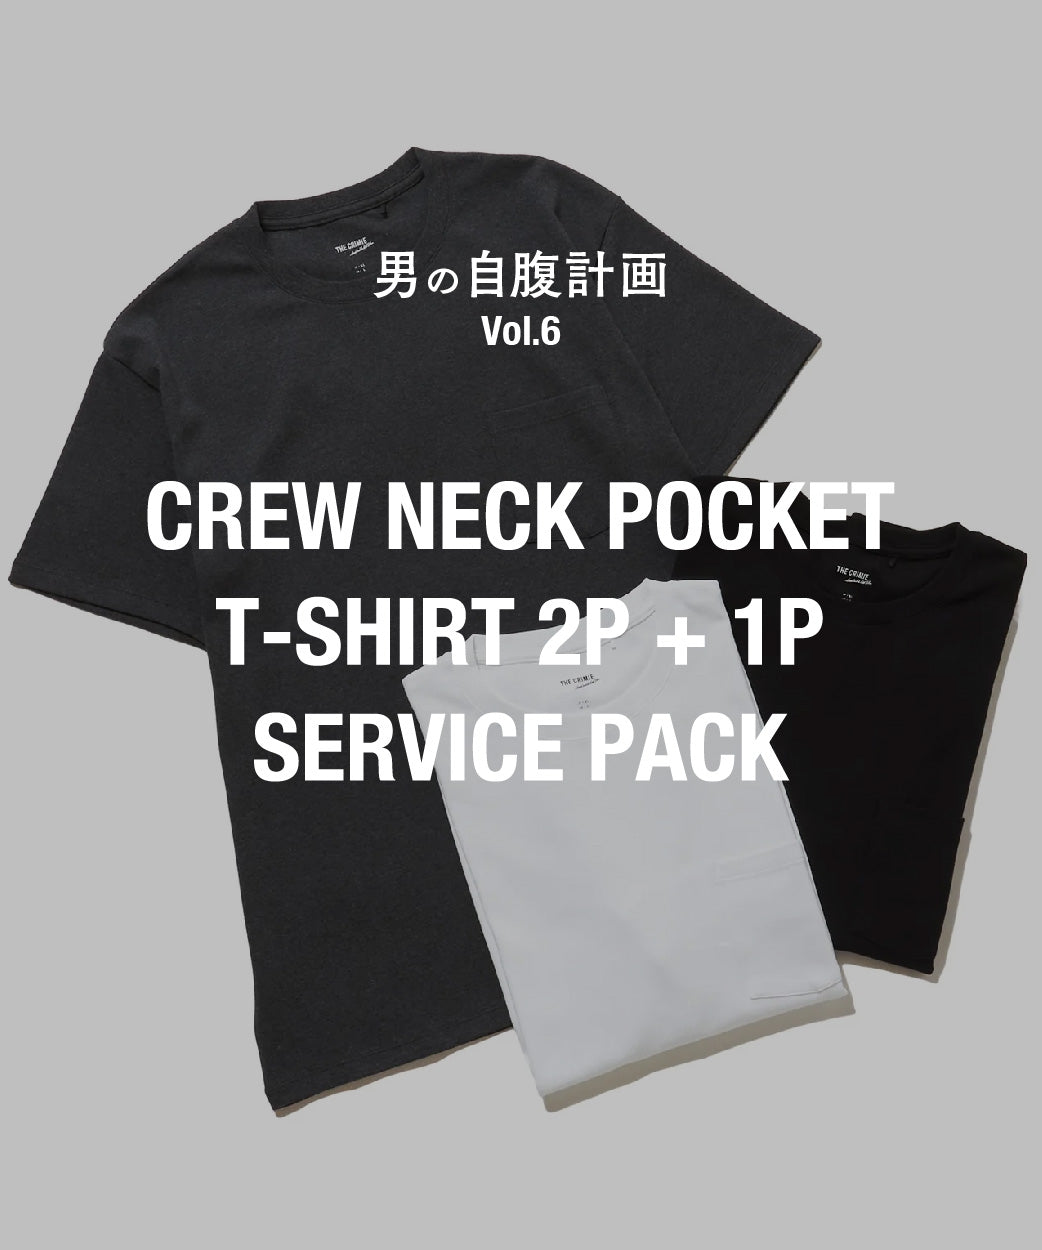 男の自腹計画 Vol.6「CREW NECK POCKET T-SHIRT 2P + 1P SERVICE PACK」